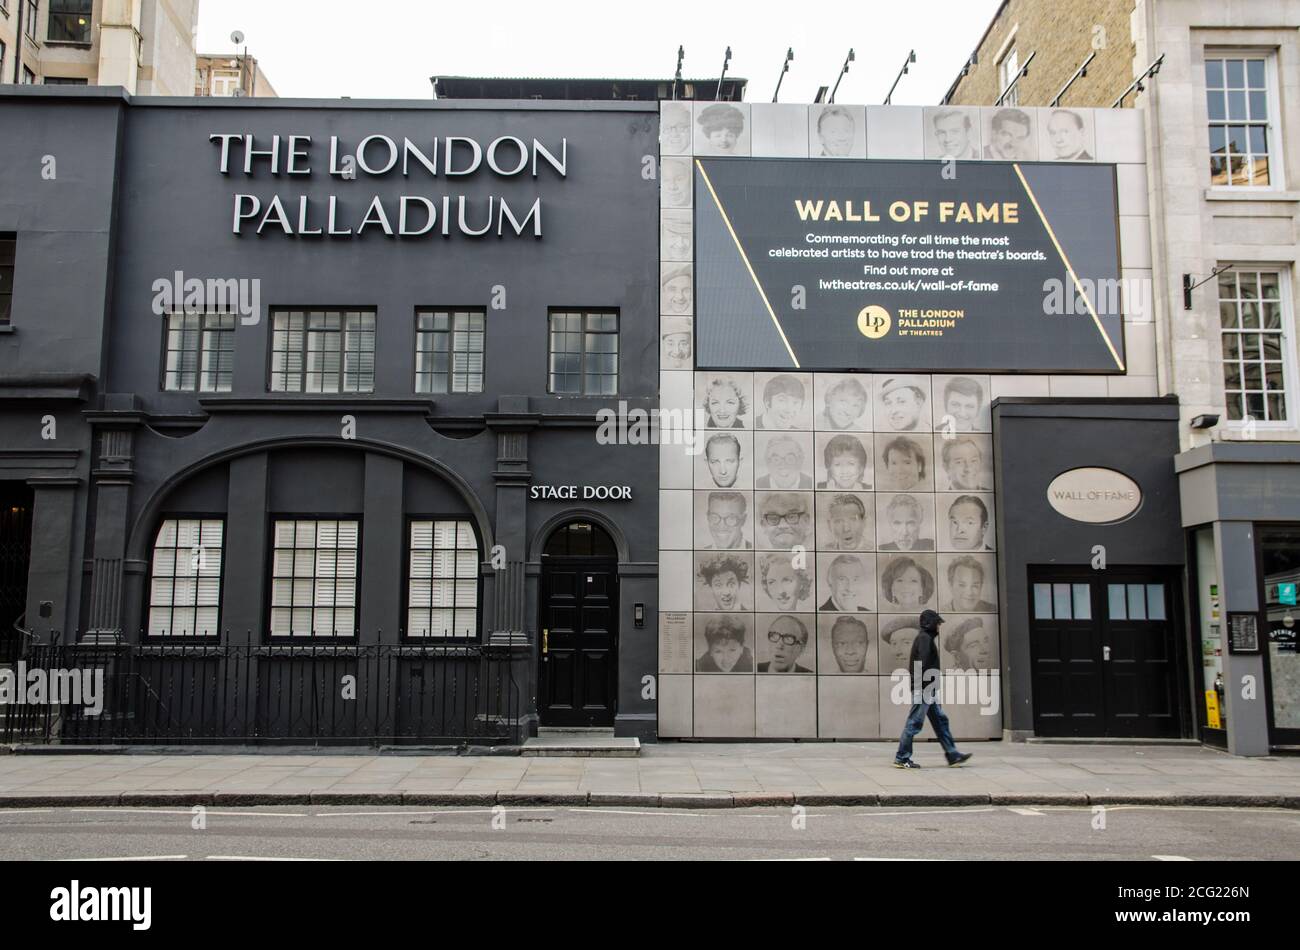 Londres, Reino Unido - 24 de abril de 2020: Stage Door and Wall of Fame en el famoso Palladium Theatre de Londres. El teatro se celebra por su variedad muestra a. Foto de stock